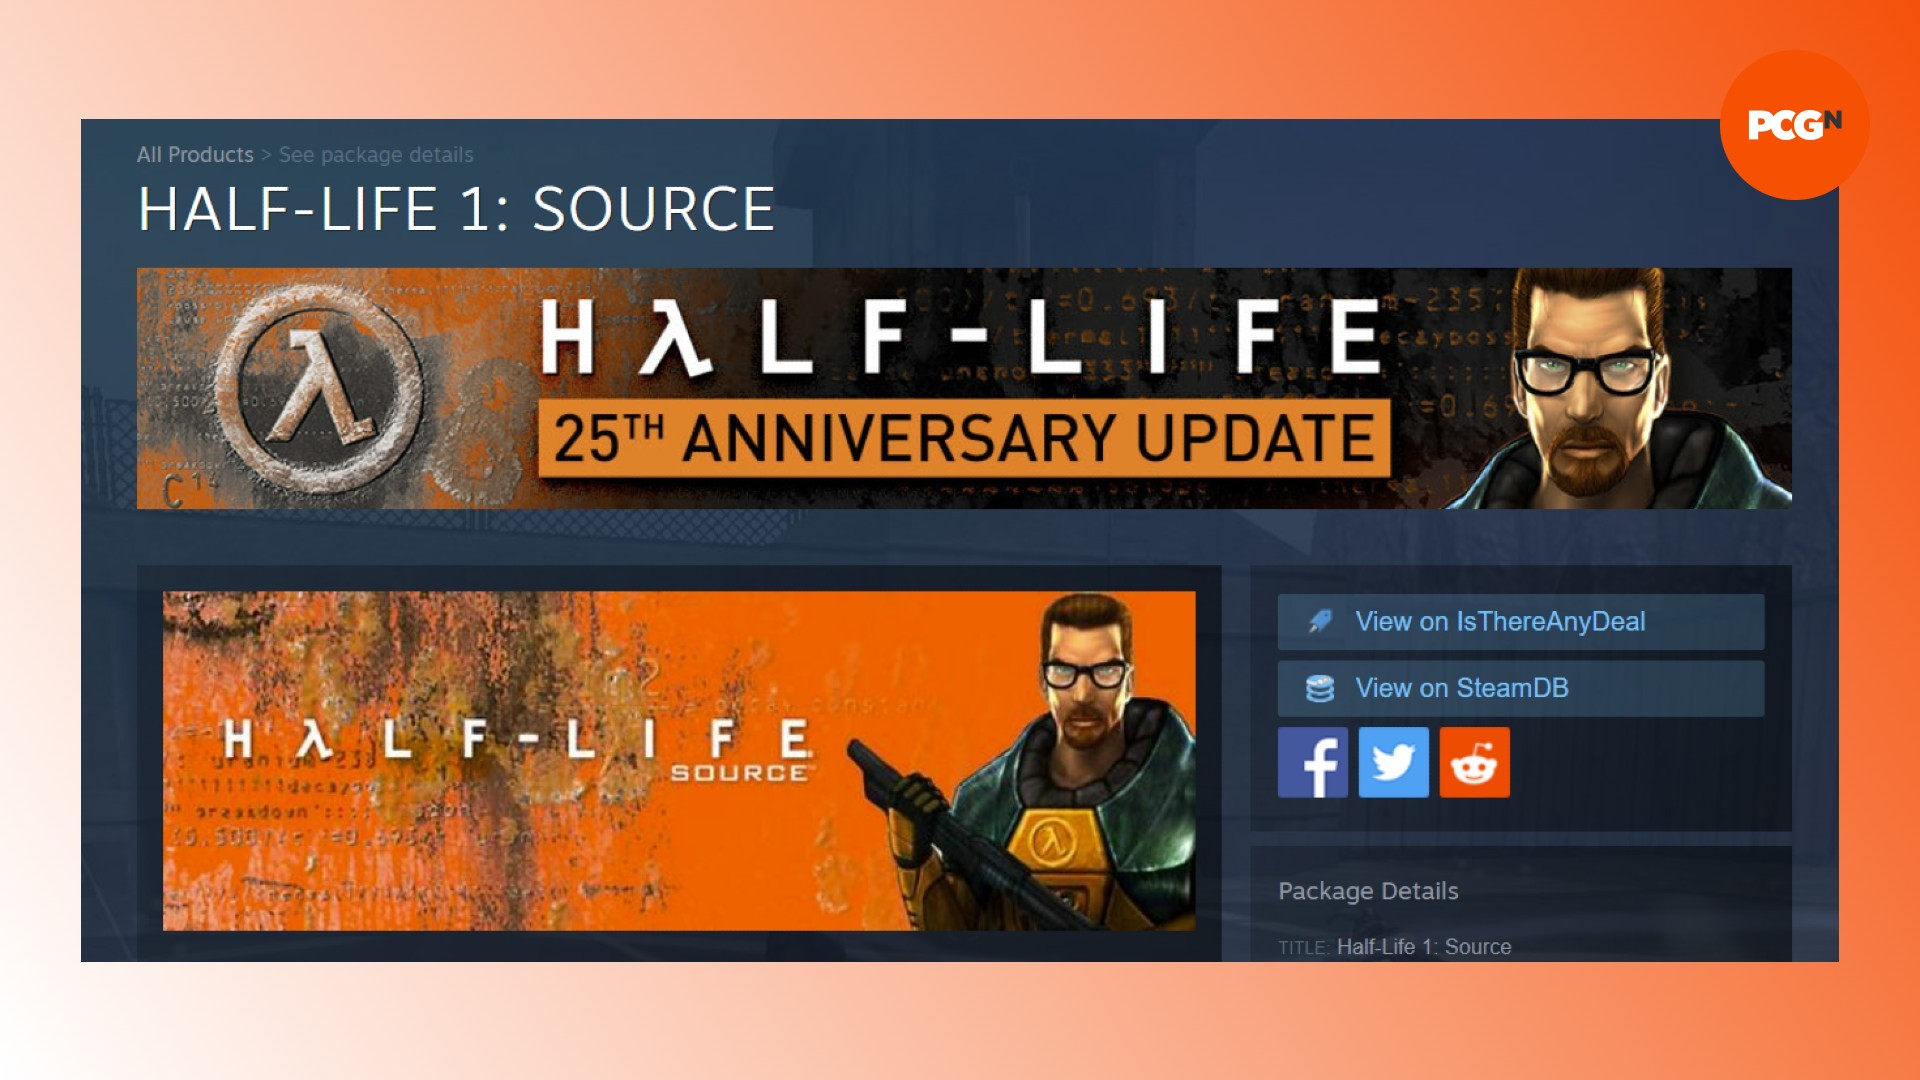 Half-Life Source Steam eliminado de la lista: una página de la tienda Steam para el juego FPS Half-Life Source